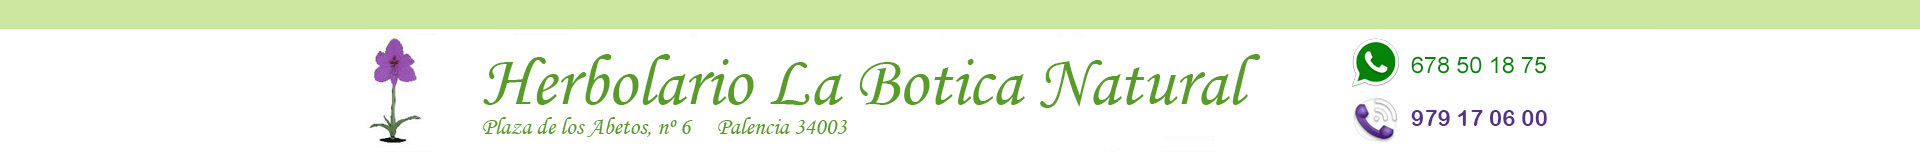 Ambientadores, Limpieza hogar ecológica, Herbolario online, Palencia, La Botica Natural